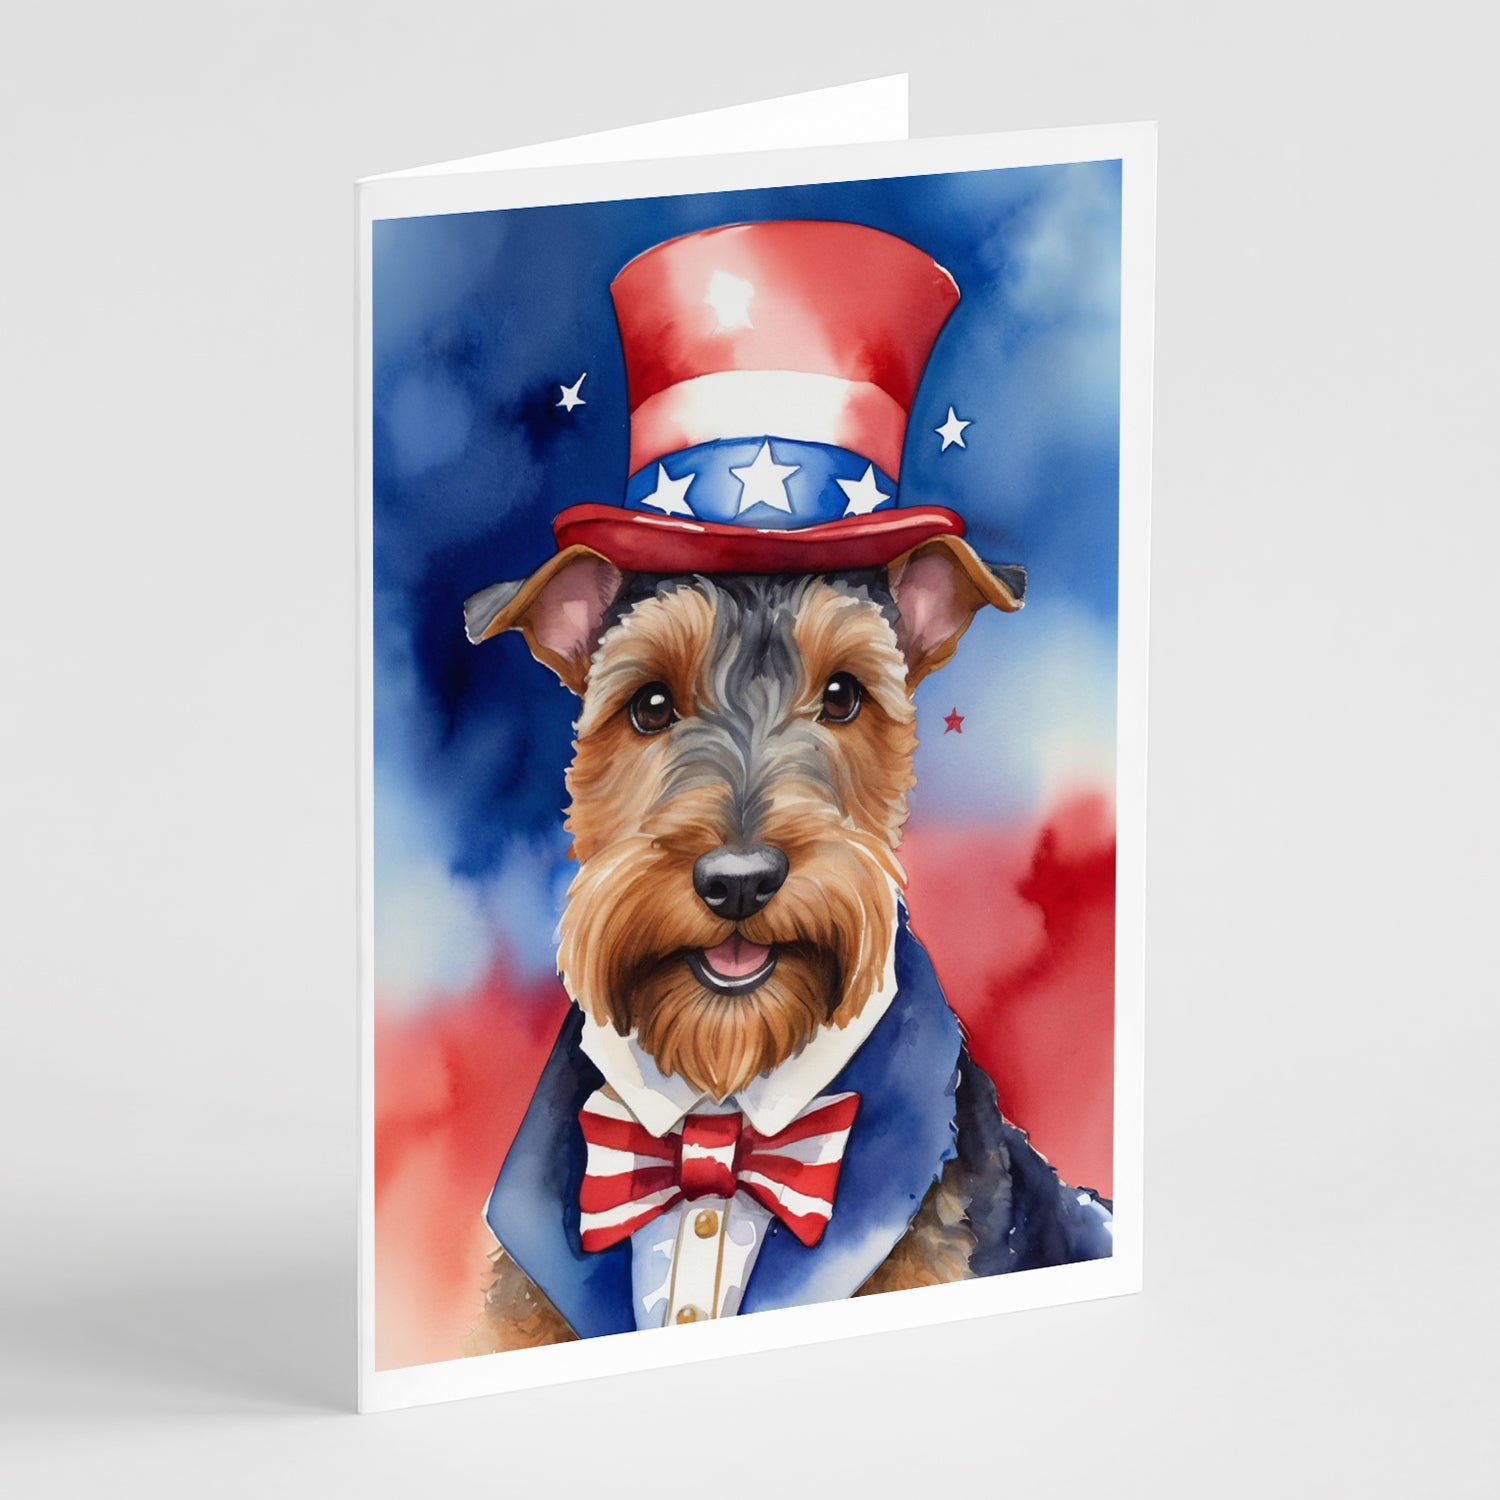 Buy this Welsh Terrier Patriotic American Greeting Cards Pack of 8